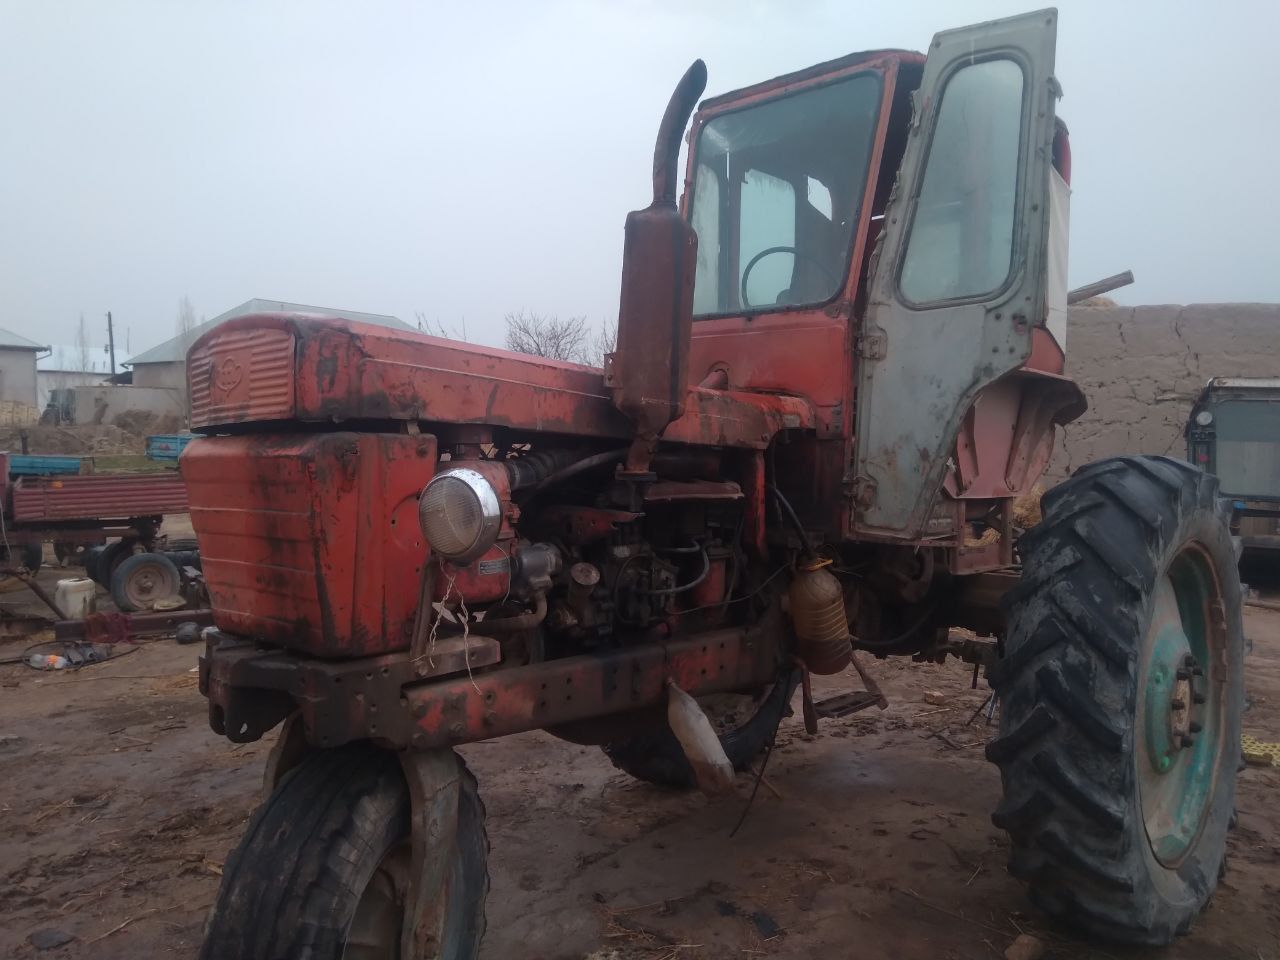 Traktor 28  yurib duribdi srochniy sotiladi dastavka yuq